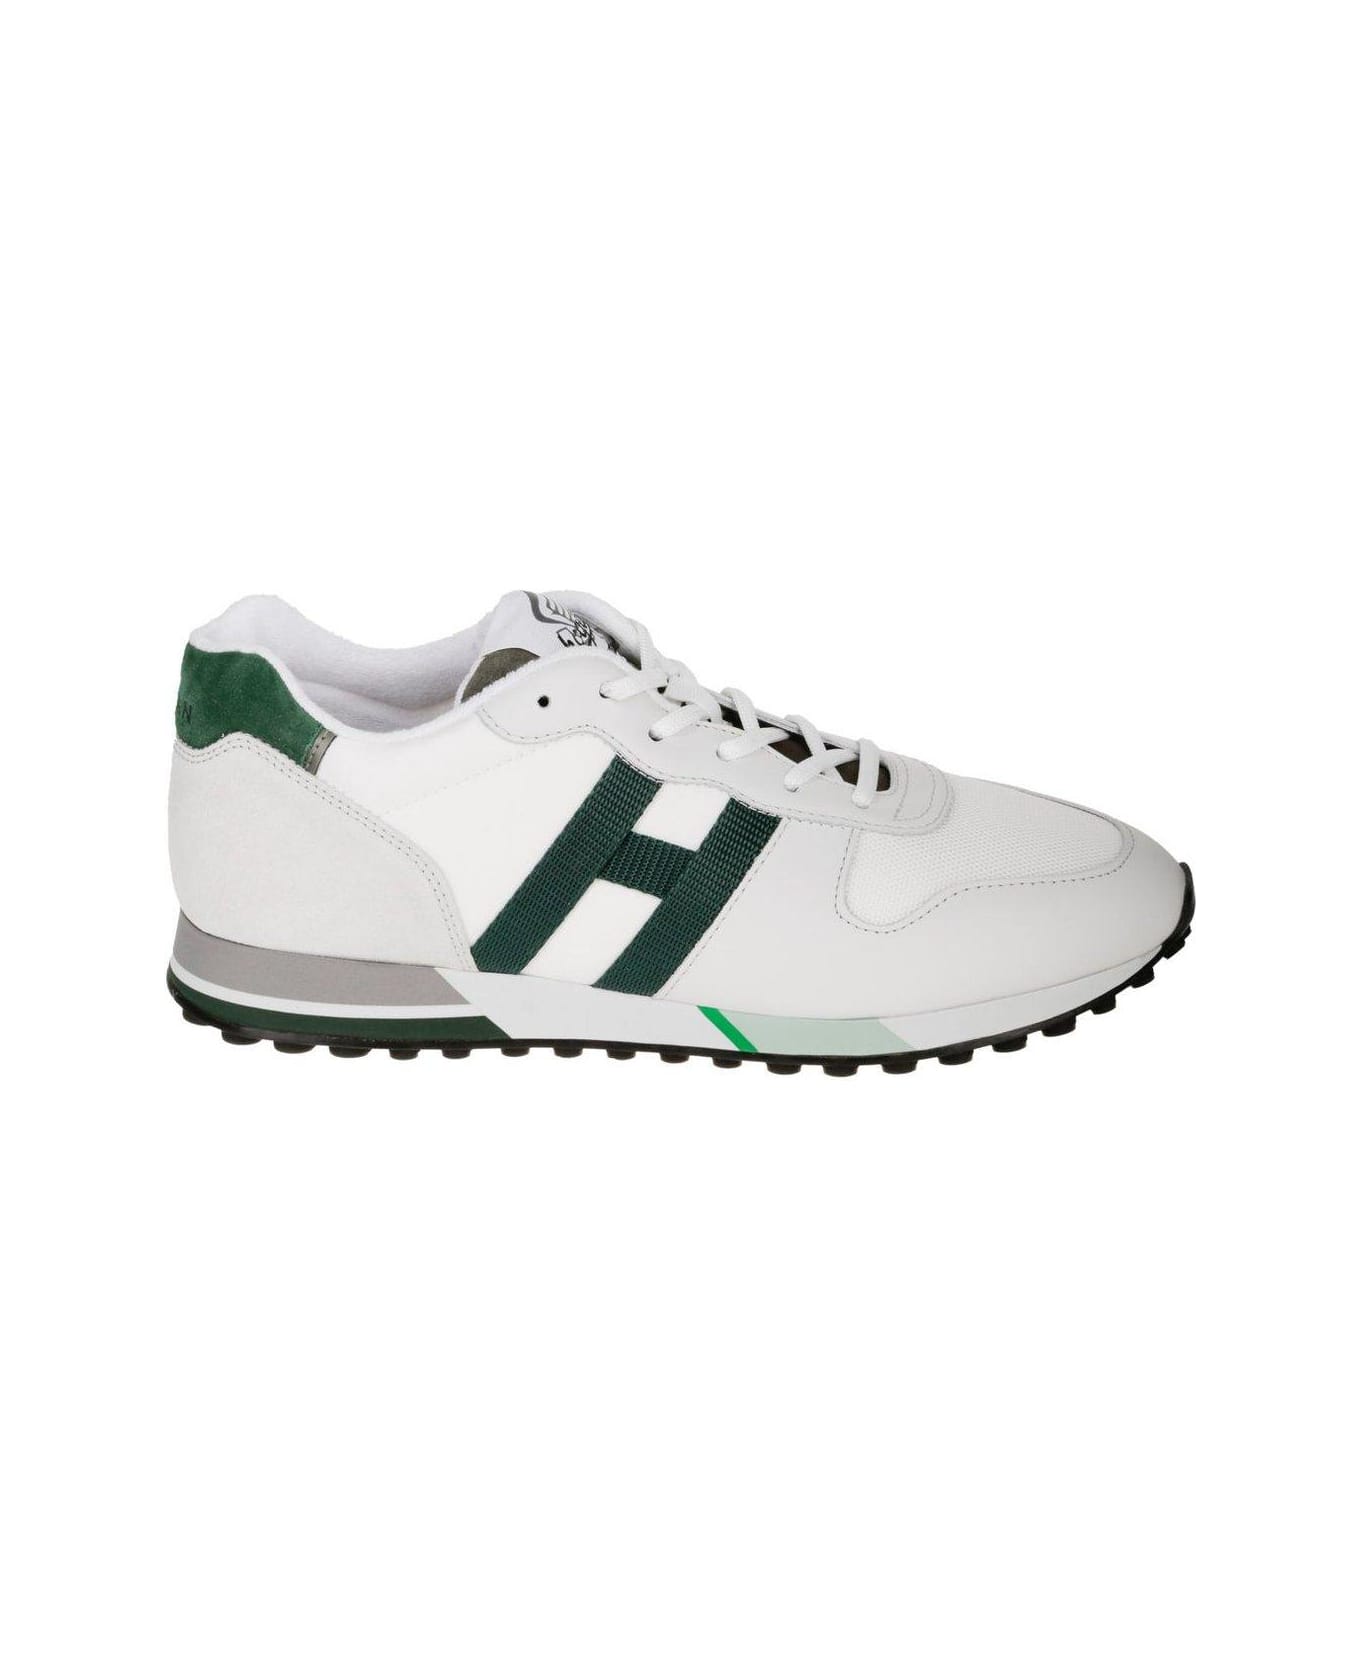 Hogan H383 Sneakers - White スニーカー